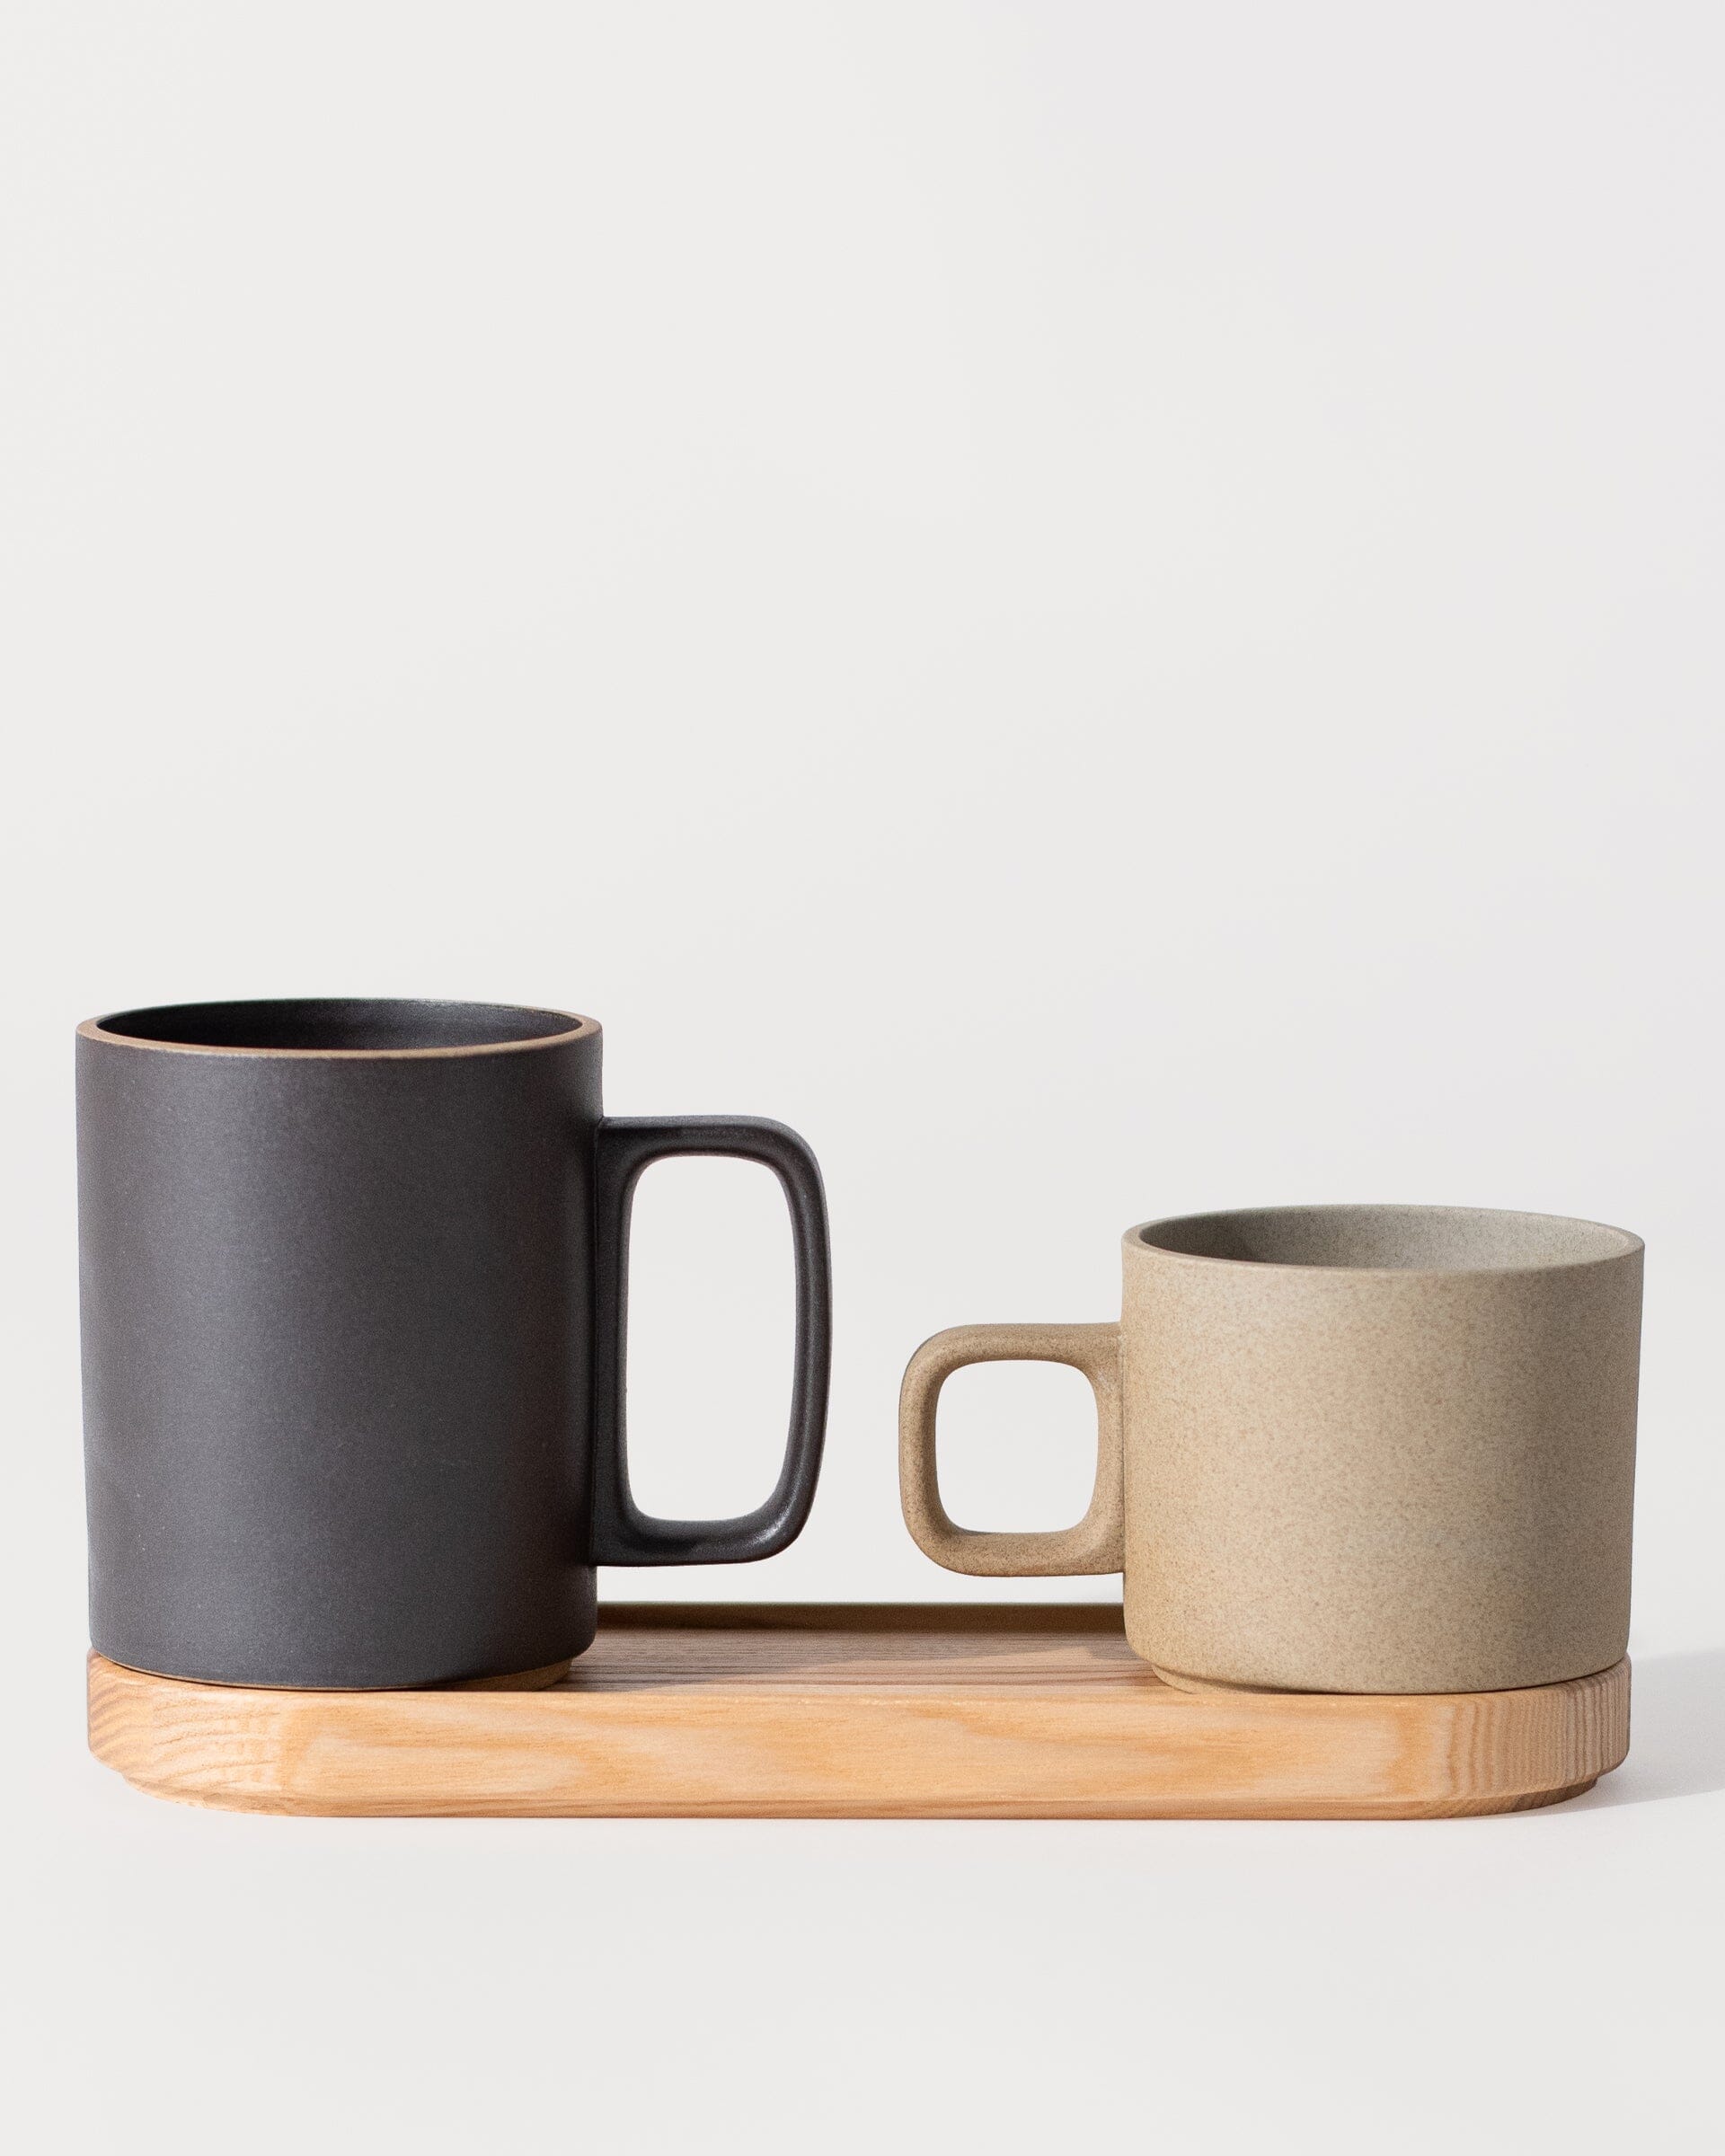 Hasami Ash Wooden Tray and Hasami Porcelain Mug Group Shot